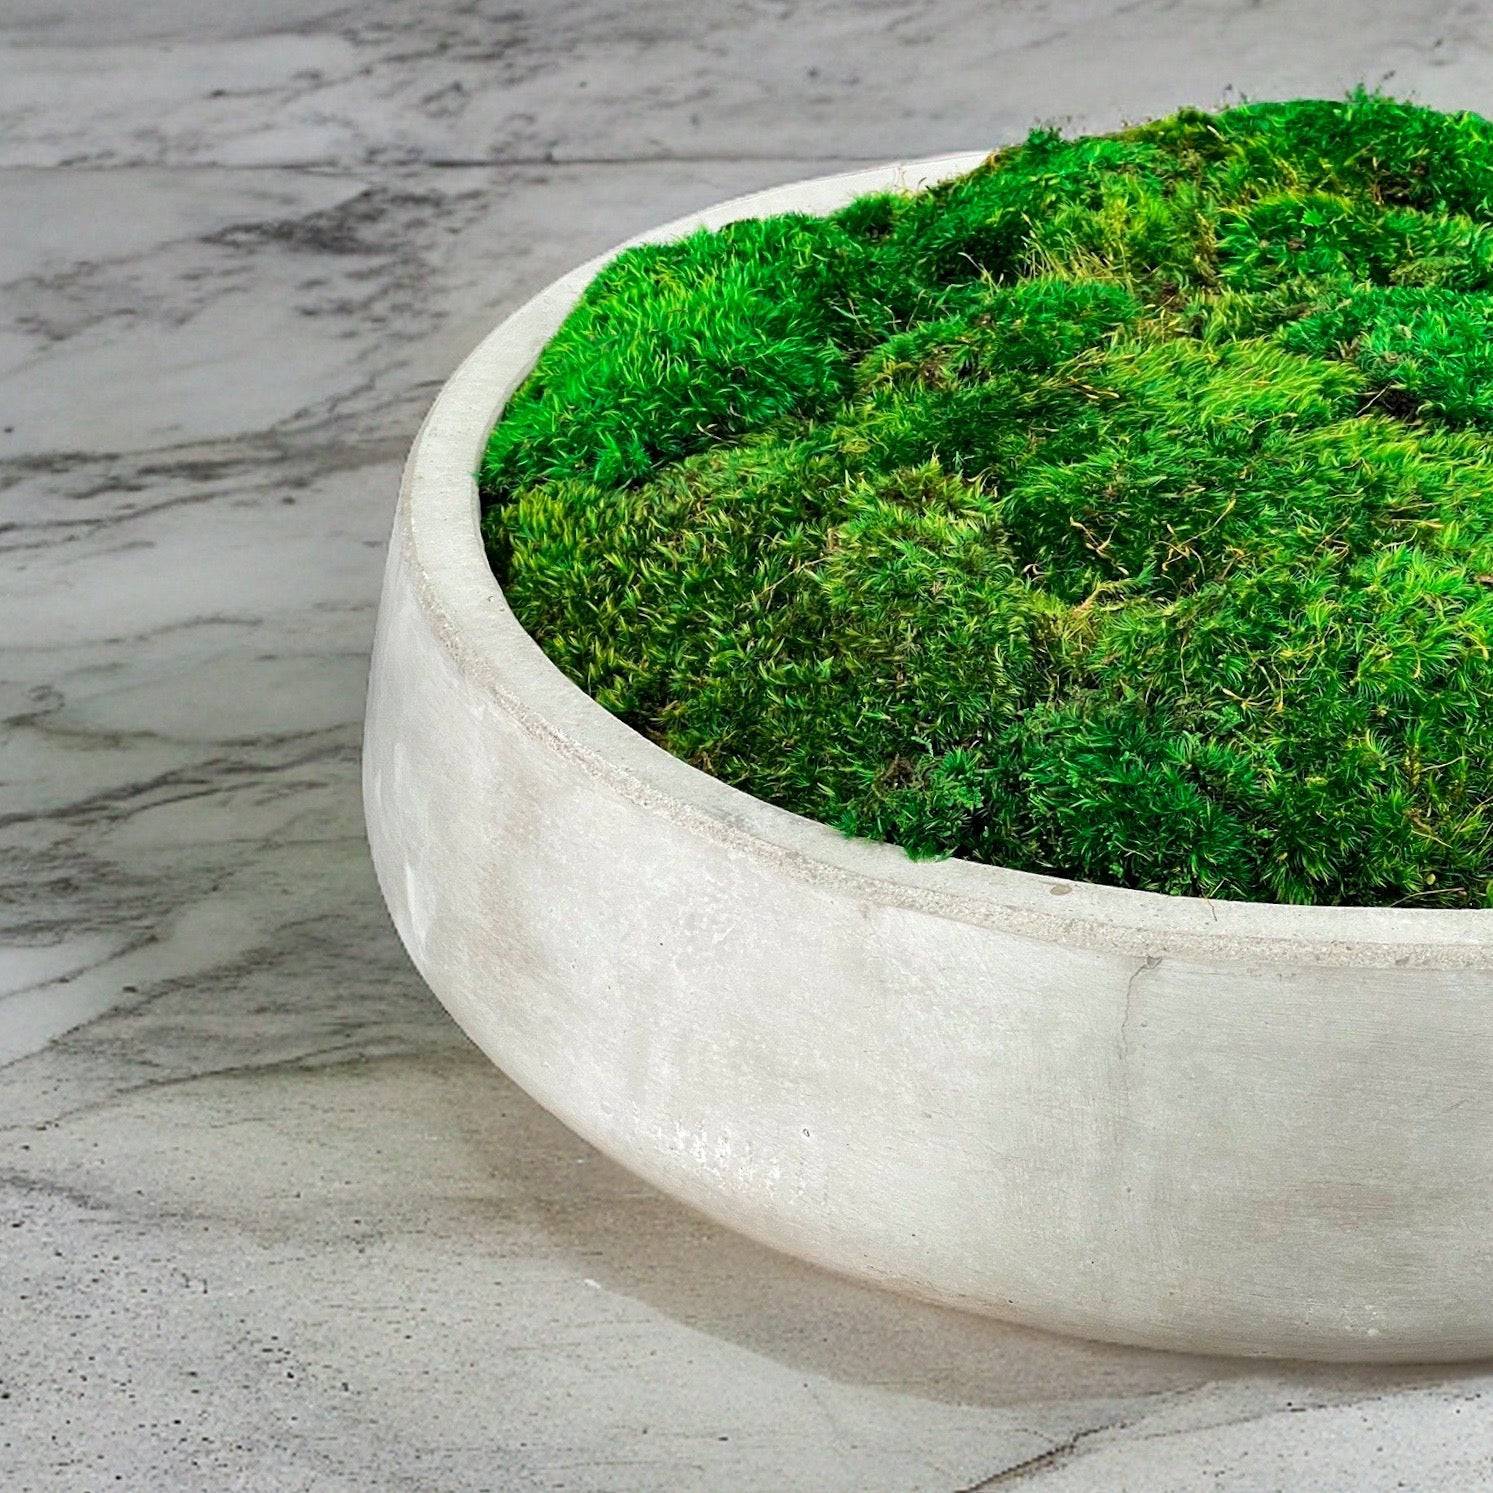 Moss Bowl Arrangement, Concrete Bowl Moss Decor 9” bowl